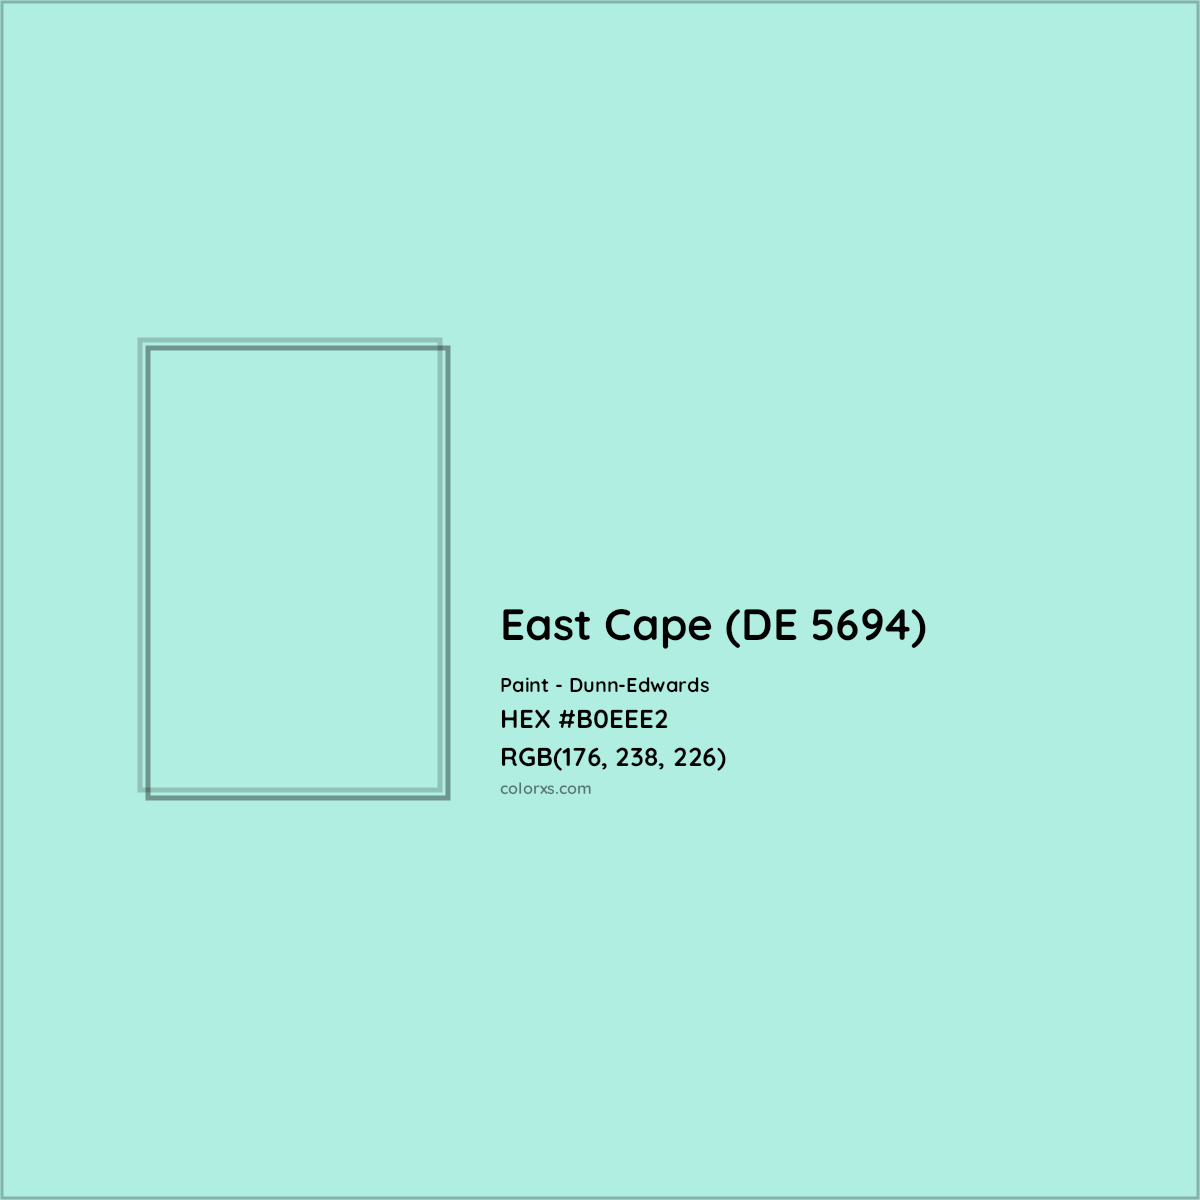 HEX #B0EEE2 East Cape (DE 5694) Paint Dunn-Edwards - Color Code